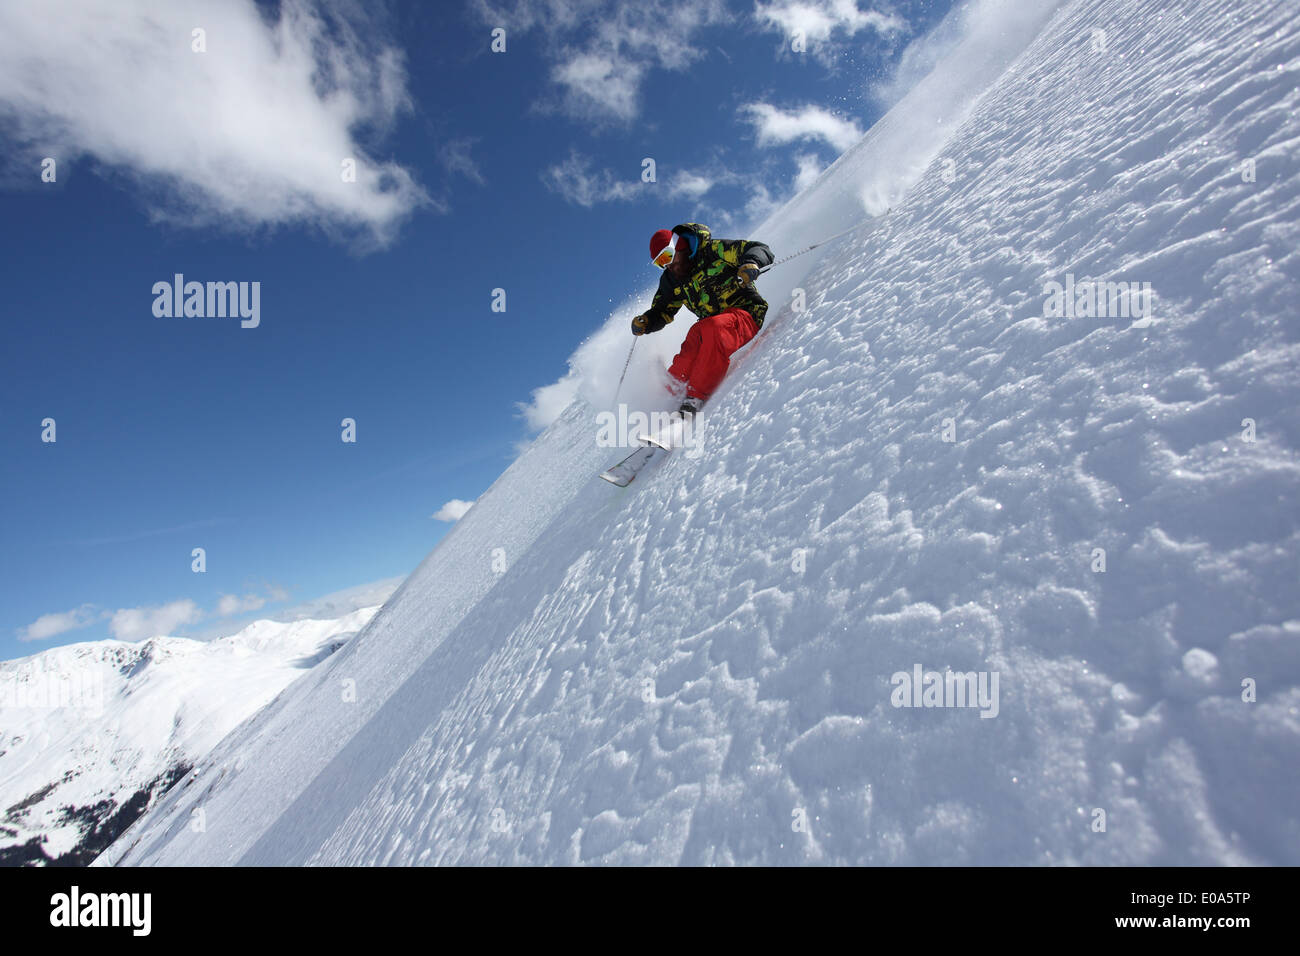 Chico en casco, gafas y rodilleras snowboard en nieve, vista delantera  Fotografía de stock - Alamy